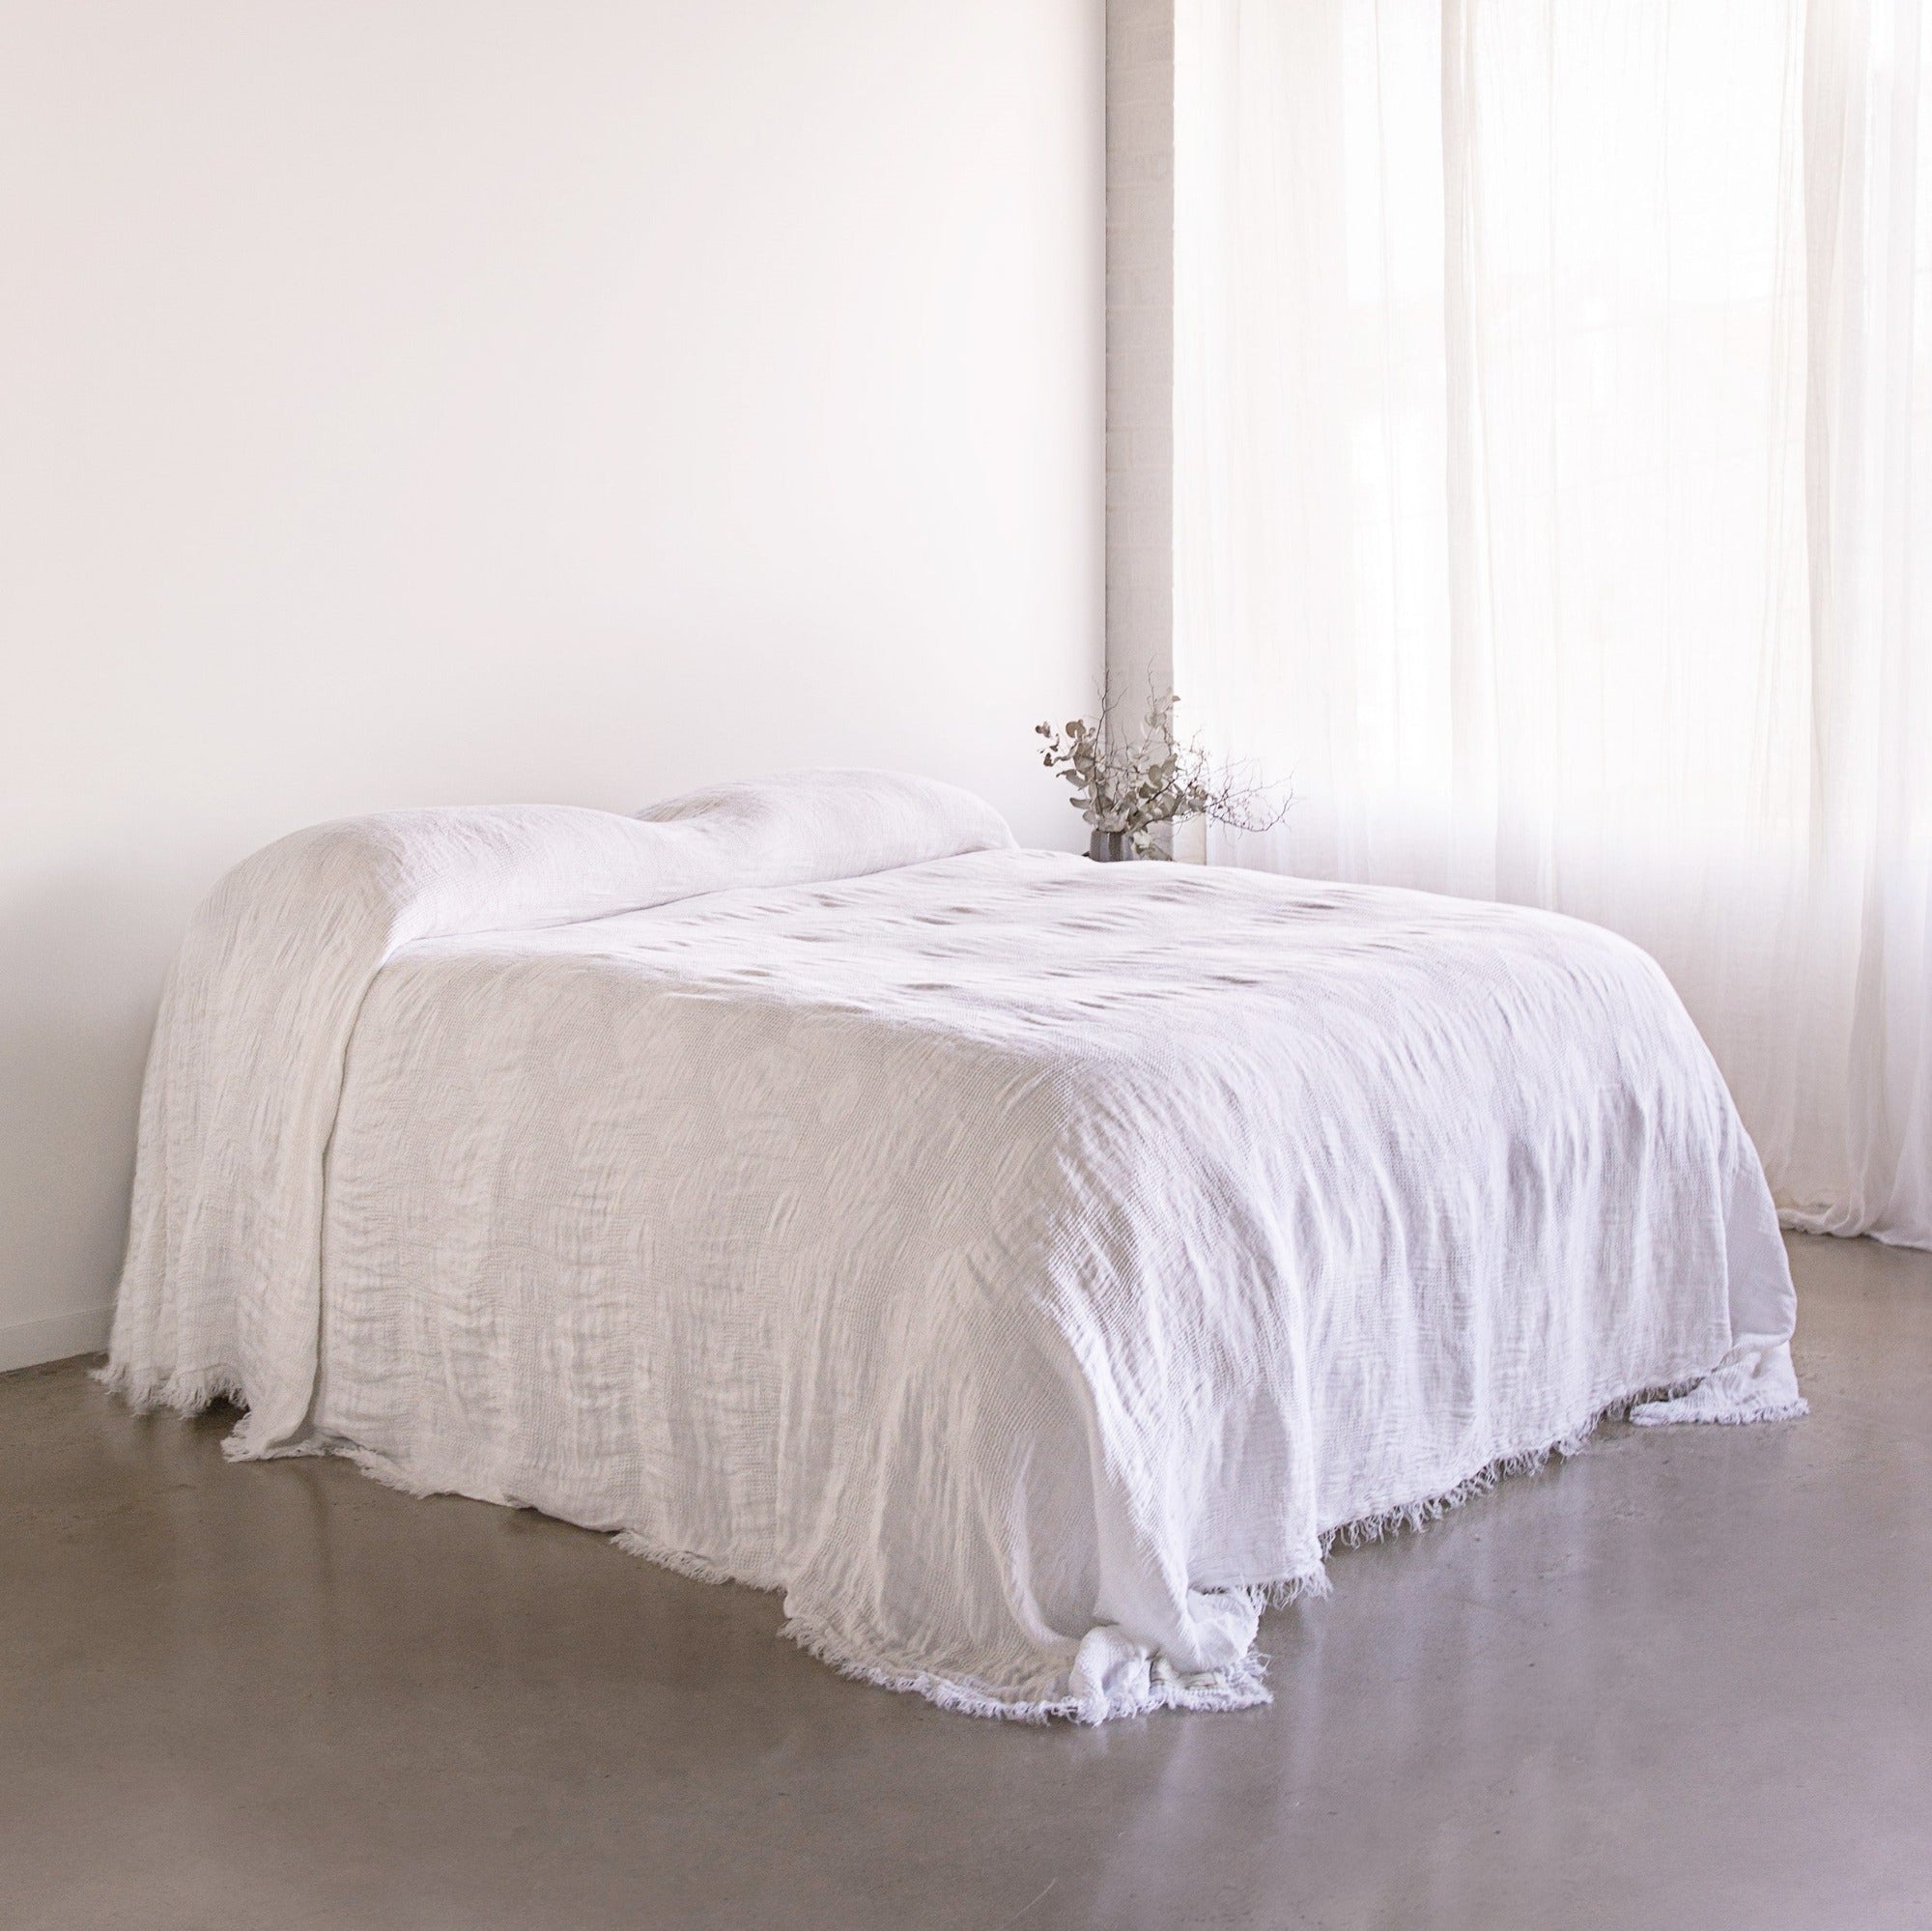 Luxury Linen Bedspread | Antique White | Hale Mercantile Co.